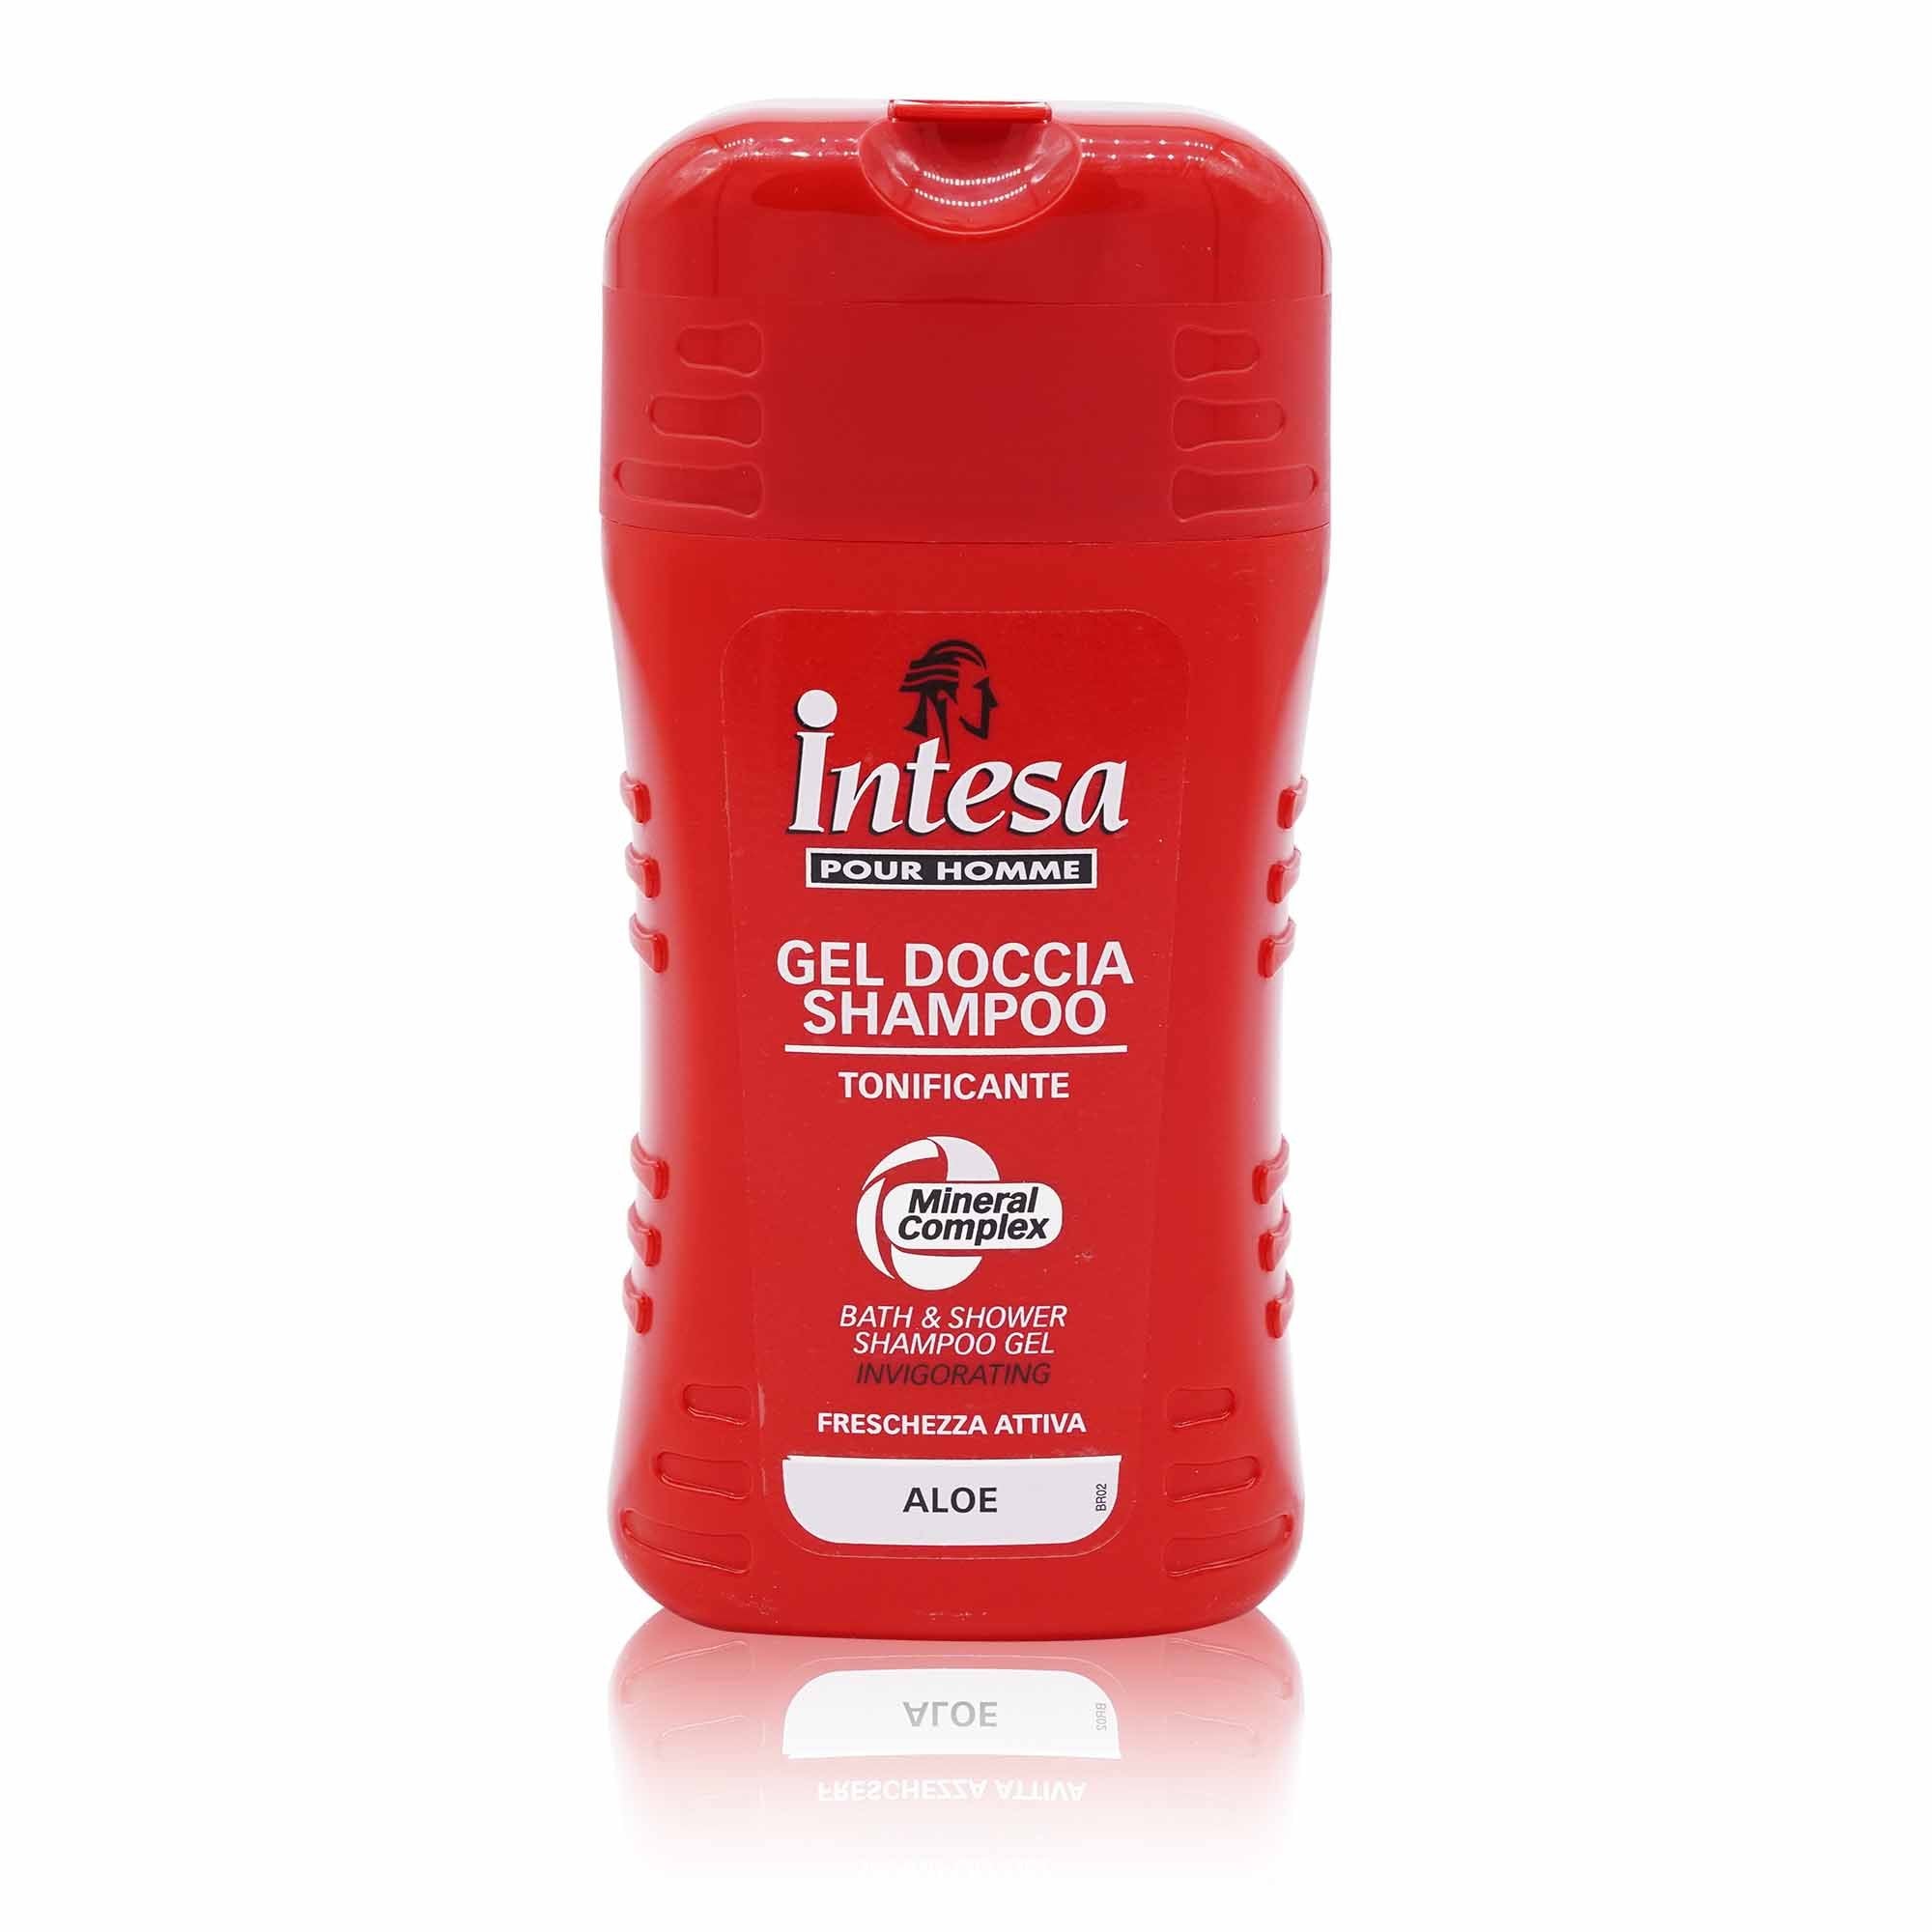 INTESA Gel doccia shampoo – Duschgel & Shampoo - 0,25l